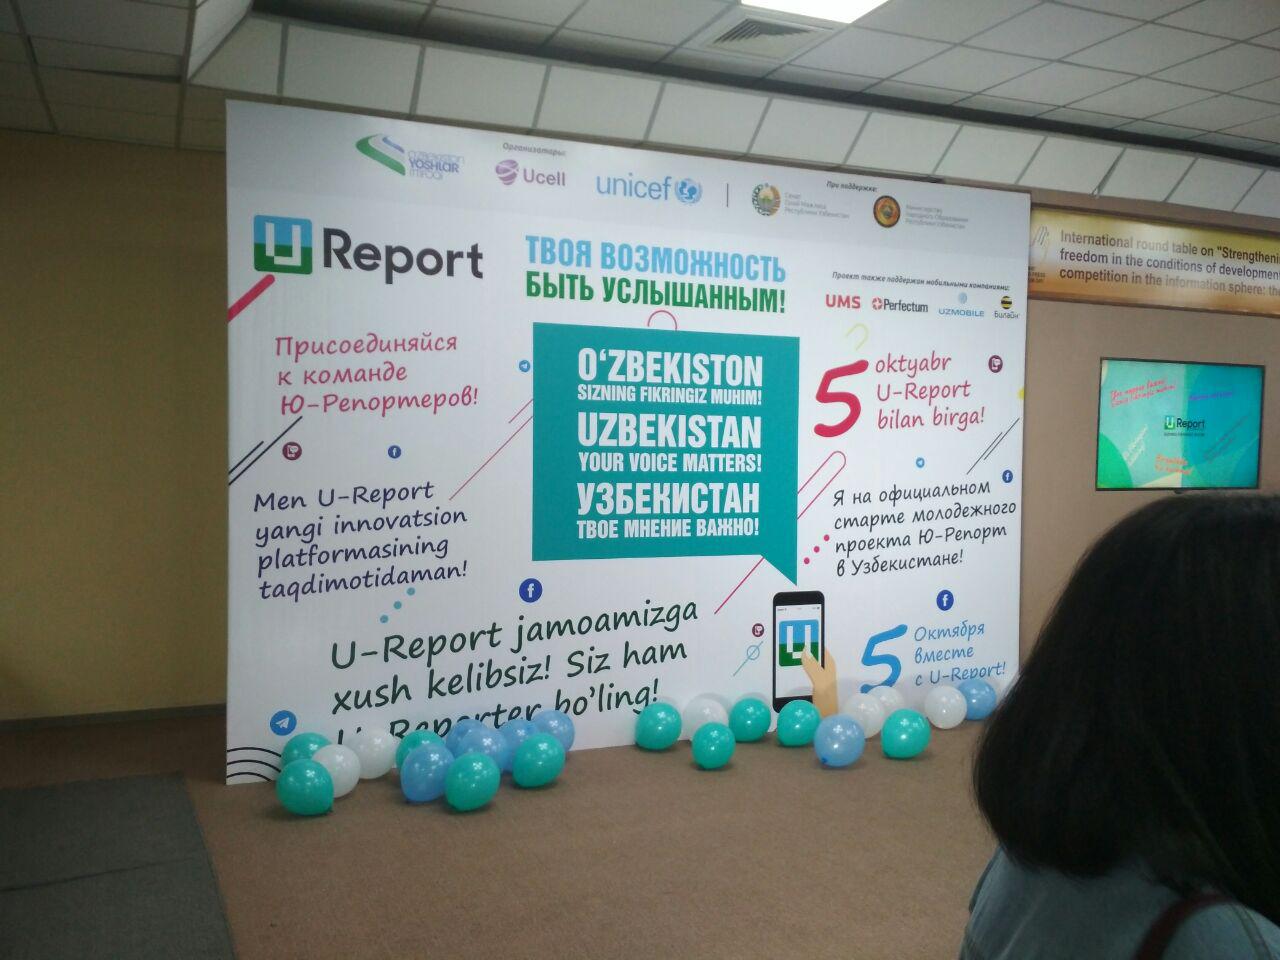 ЮНИСЕФ с партнерами запускают новую цифровую платформу для молодежи в Узбекистане